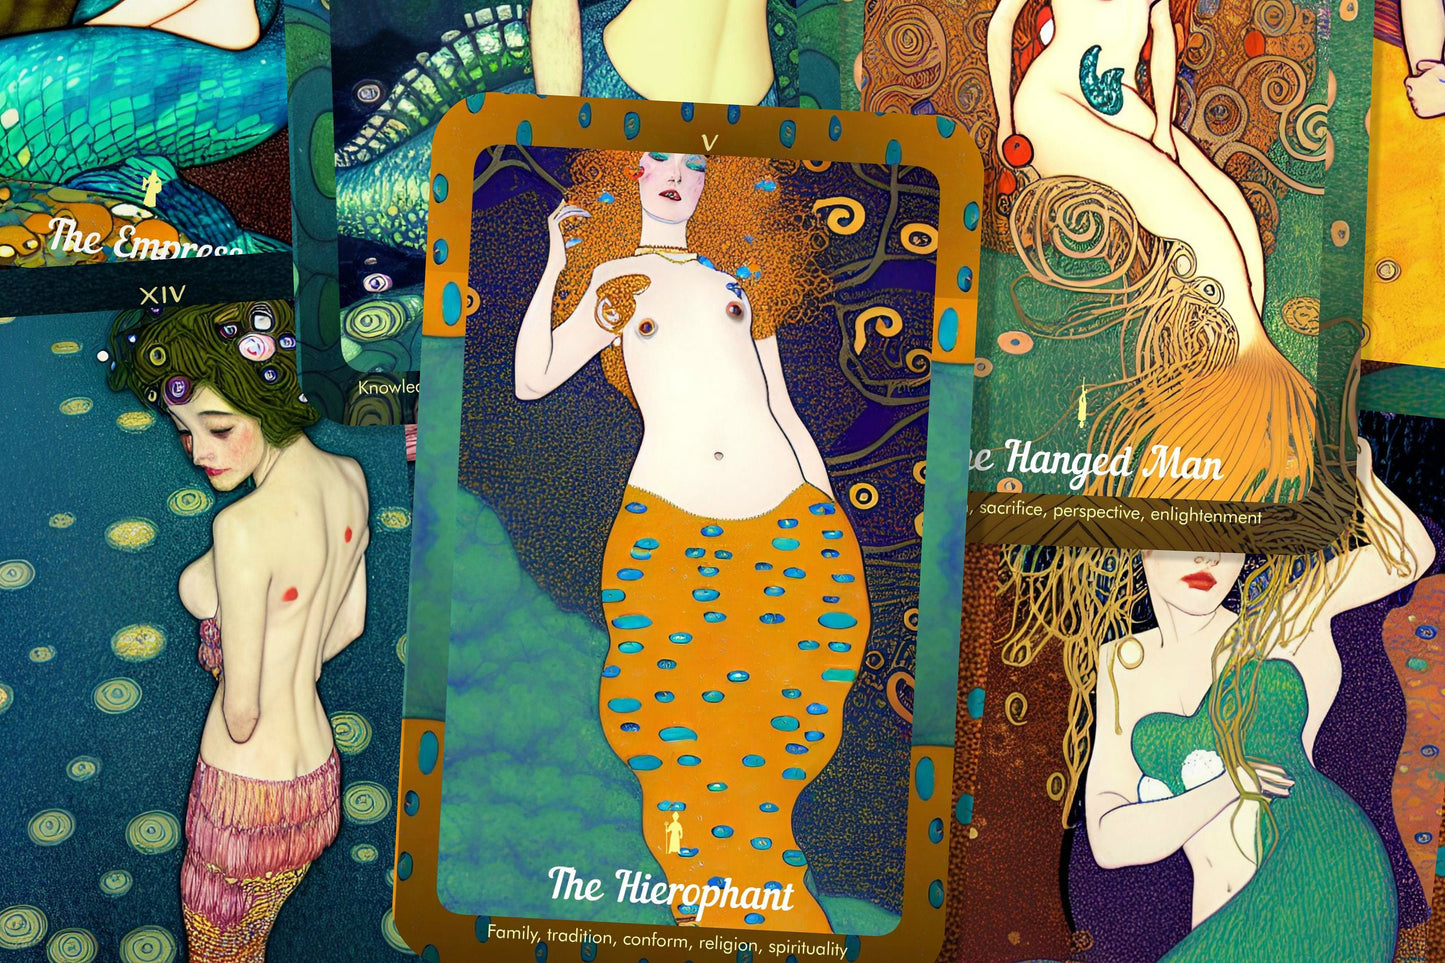 Song to the Siren Tarot - Mermaid Tarot